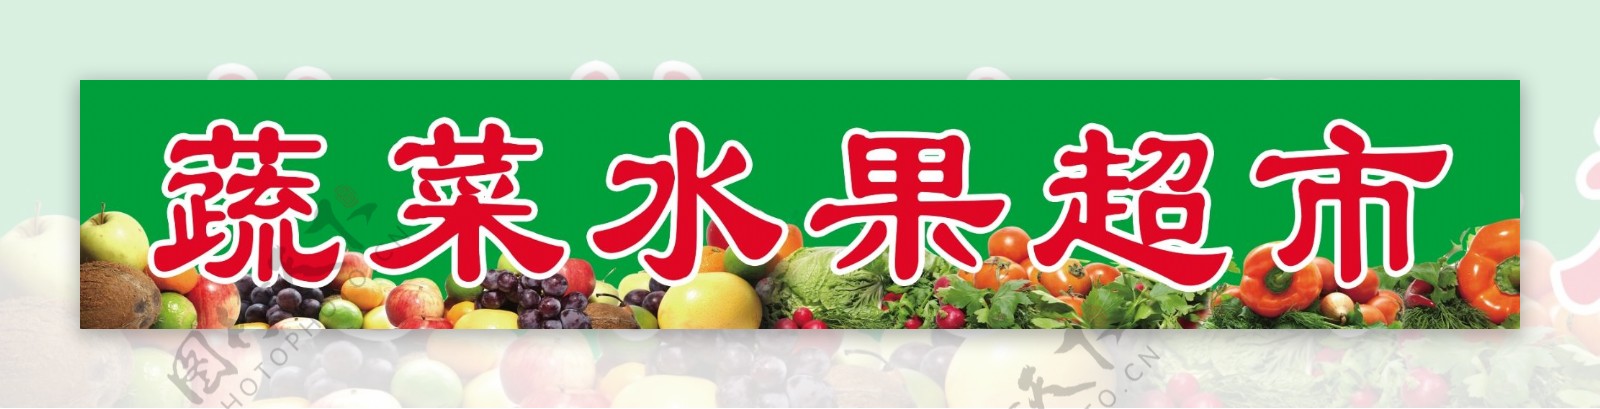 蔬菜水果超市图片